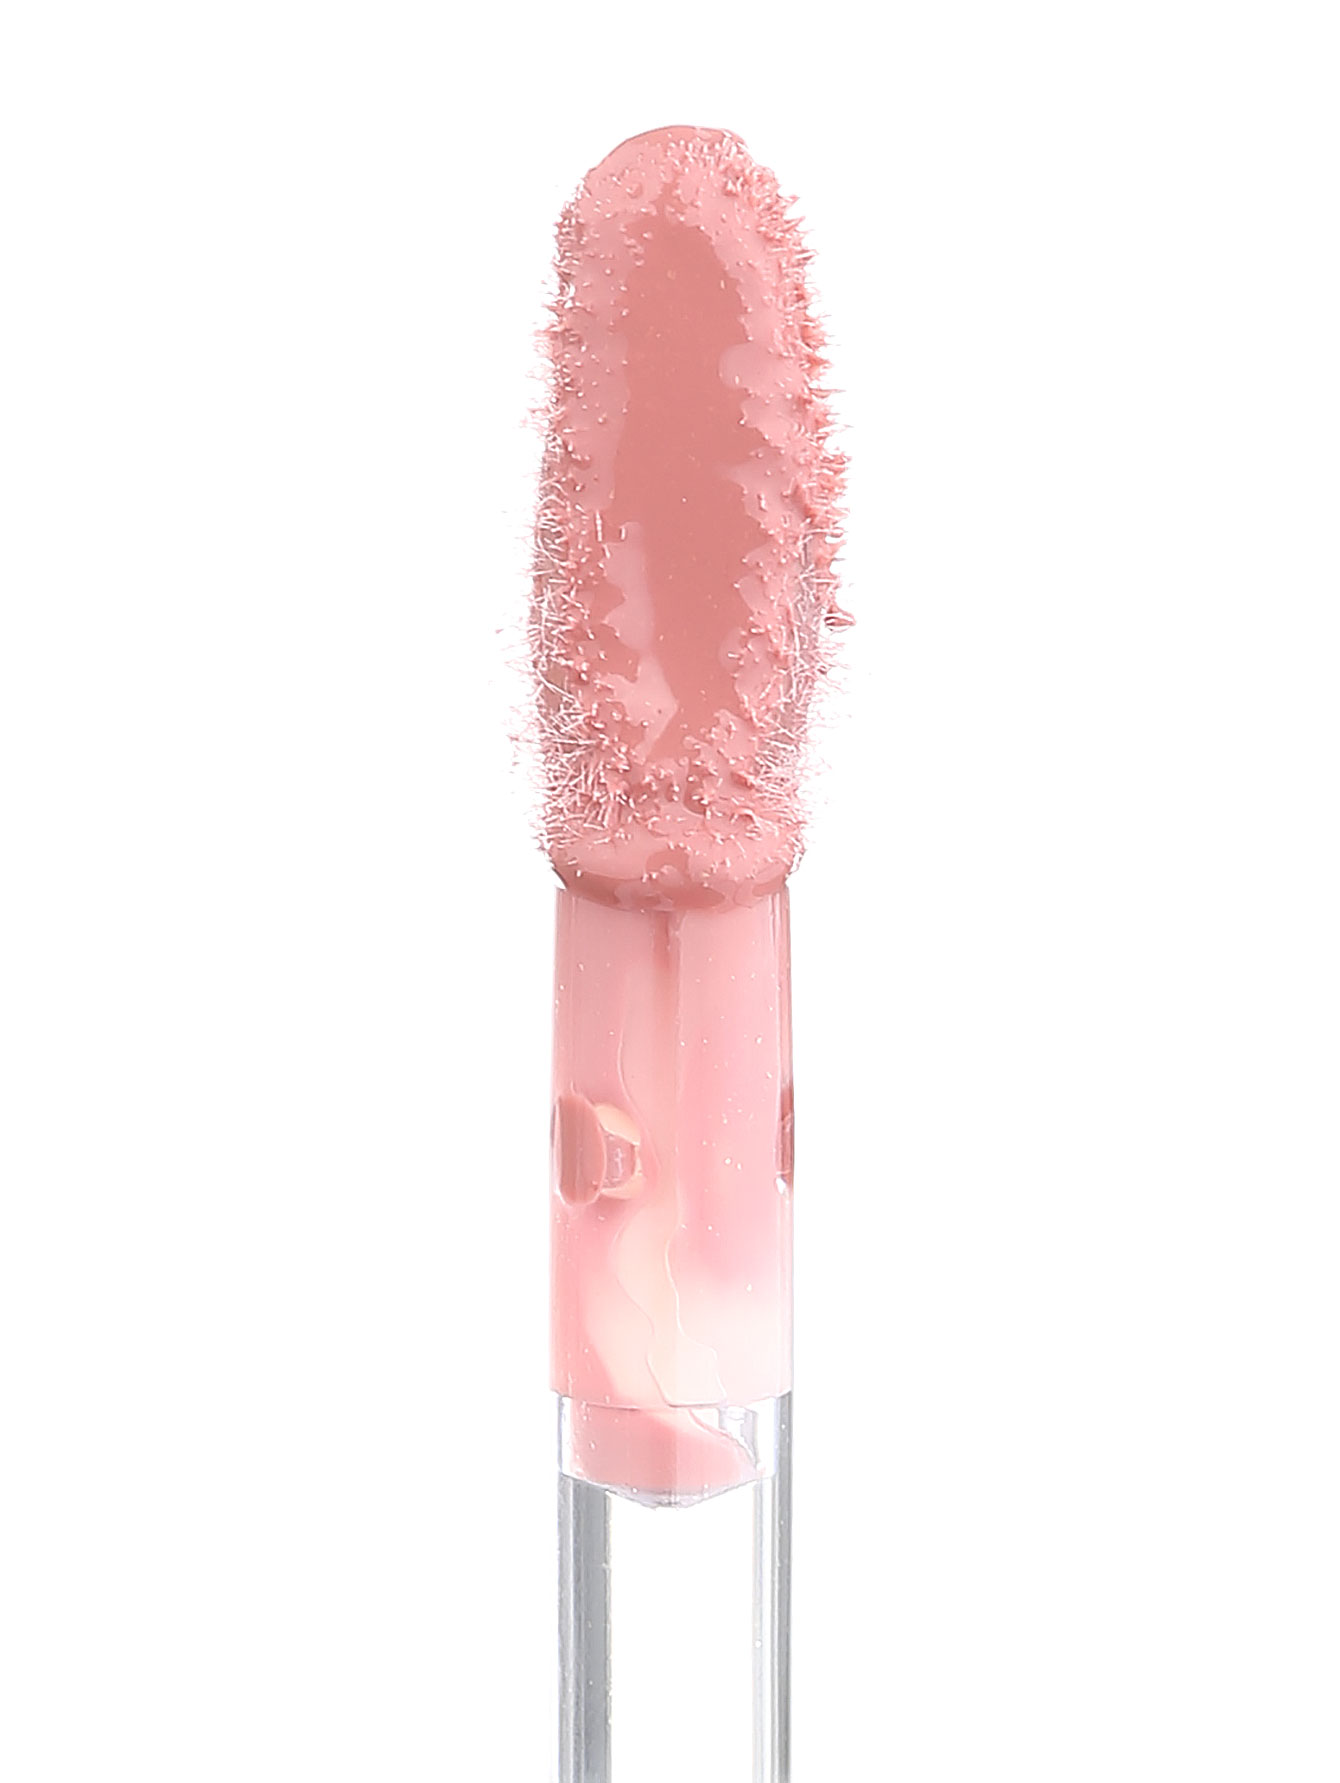  Лак для губ - №170 Potent Petal, Pure Color Gloss - Модель Верх-Низ